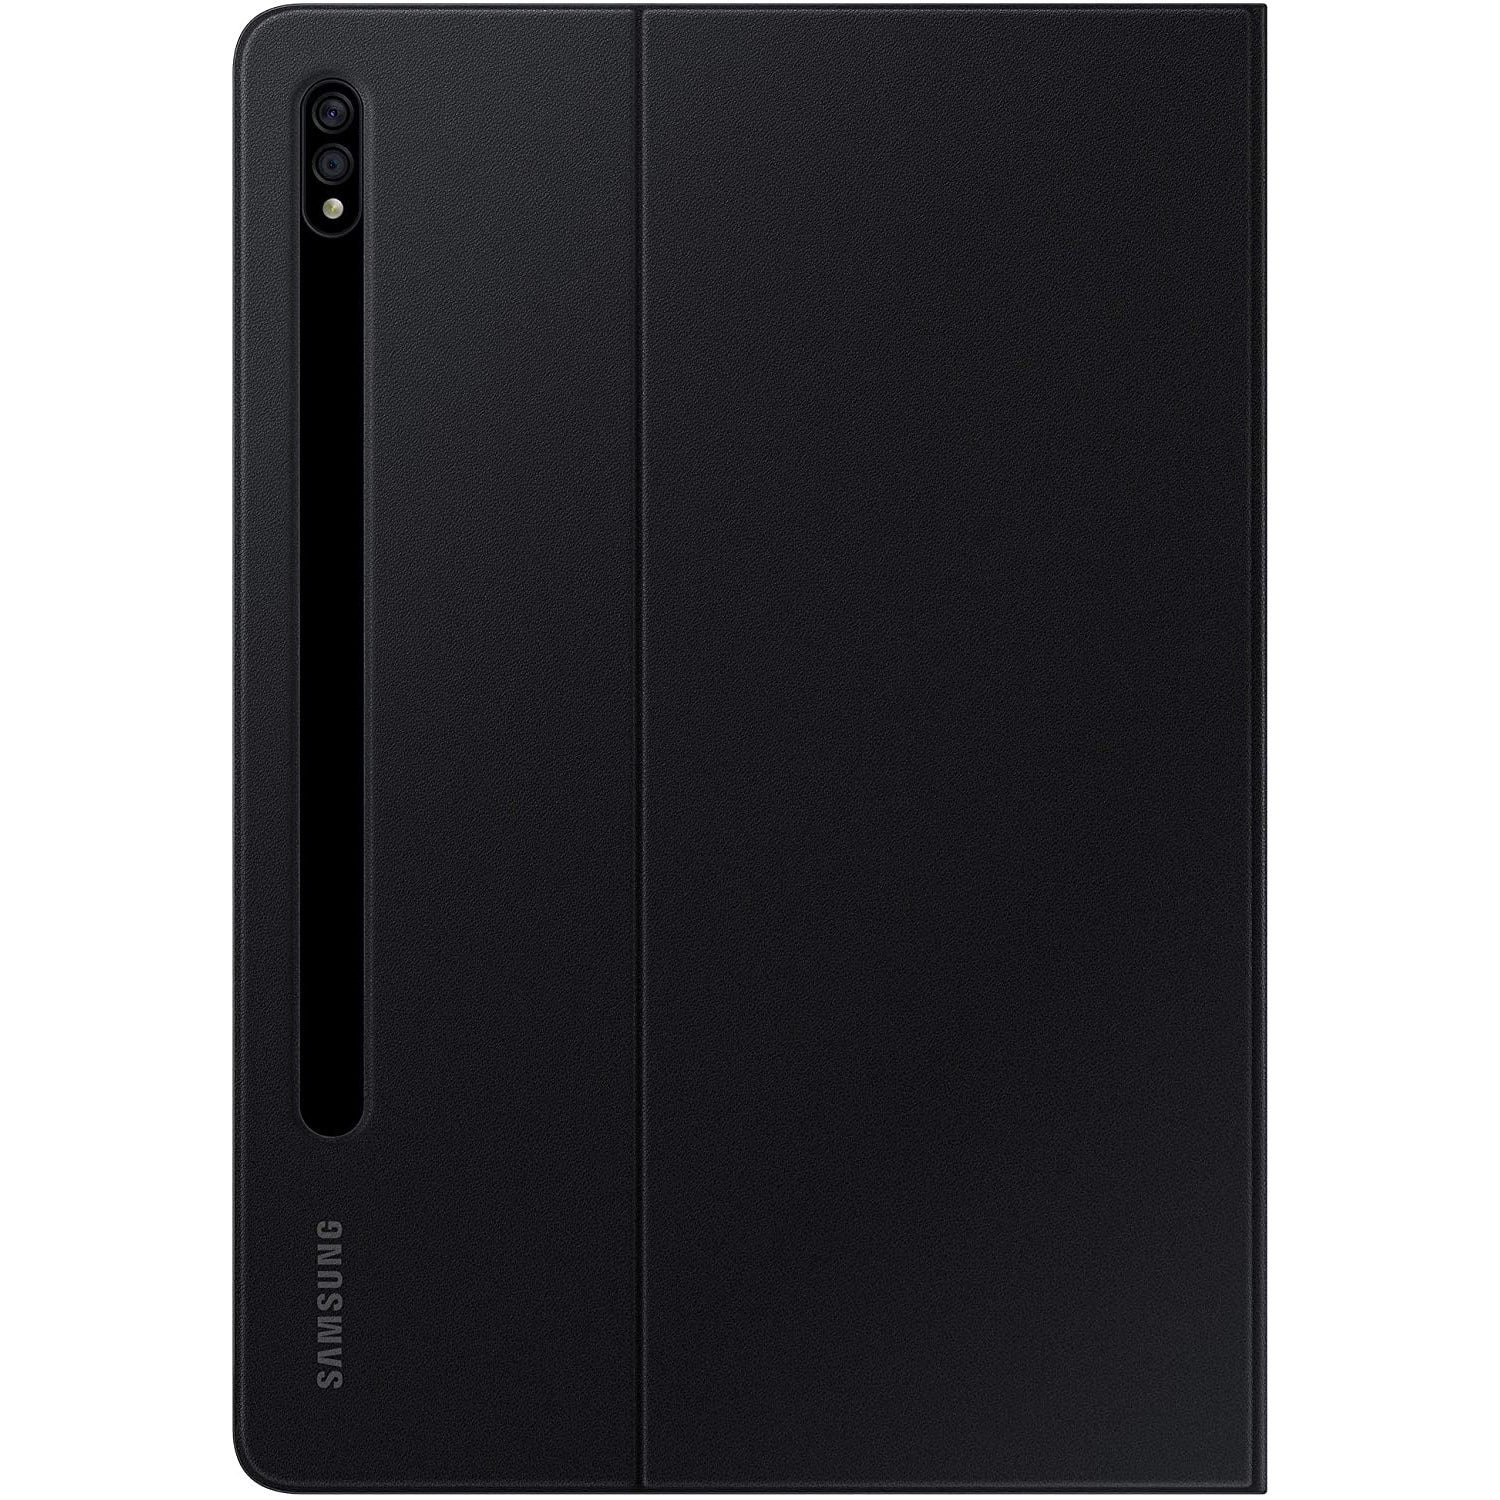 Samsung EF-BT870 Tab S7 Book Cover - Black - Refurbished Excellent